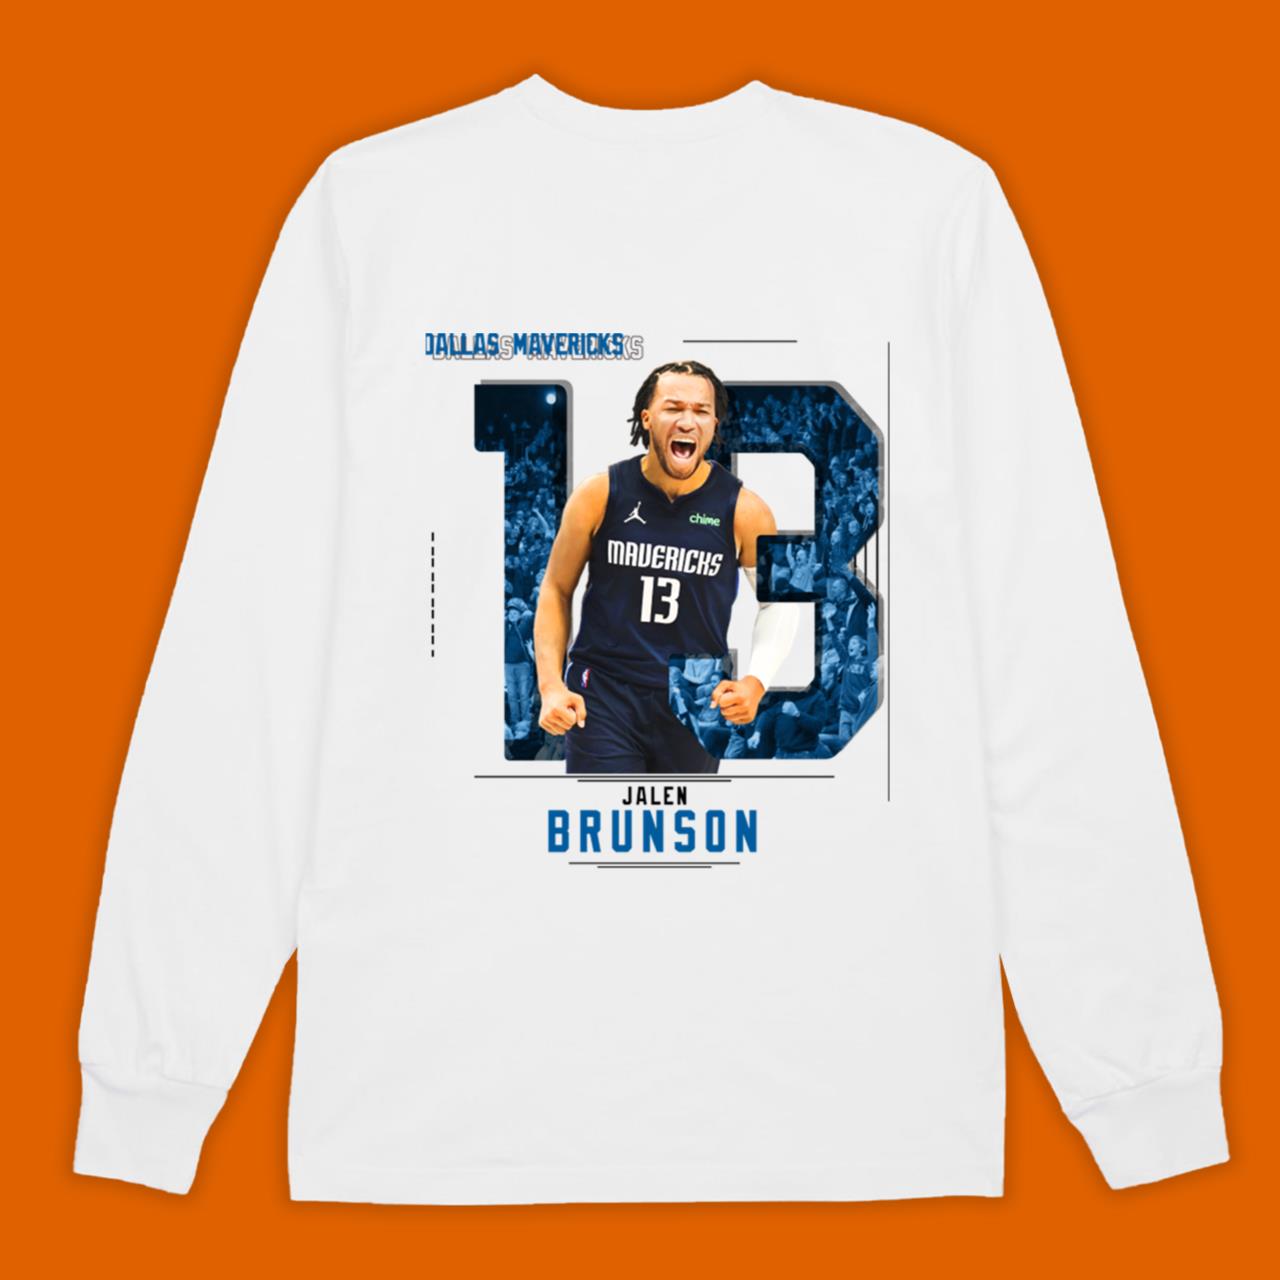 Jalen Brunson Basketball Essential T-Shirt